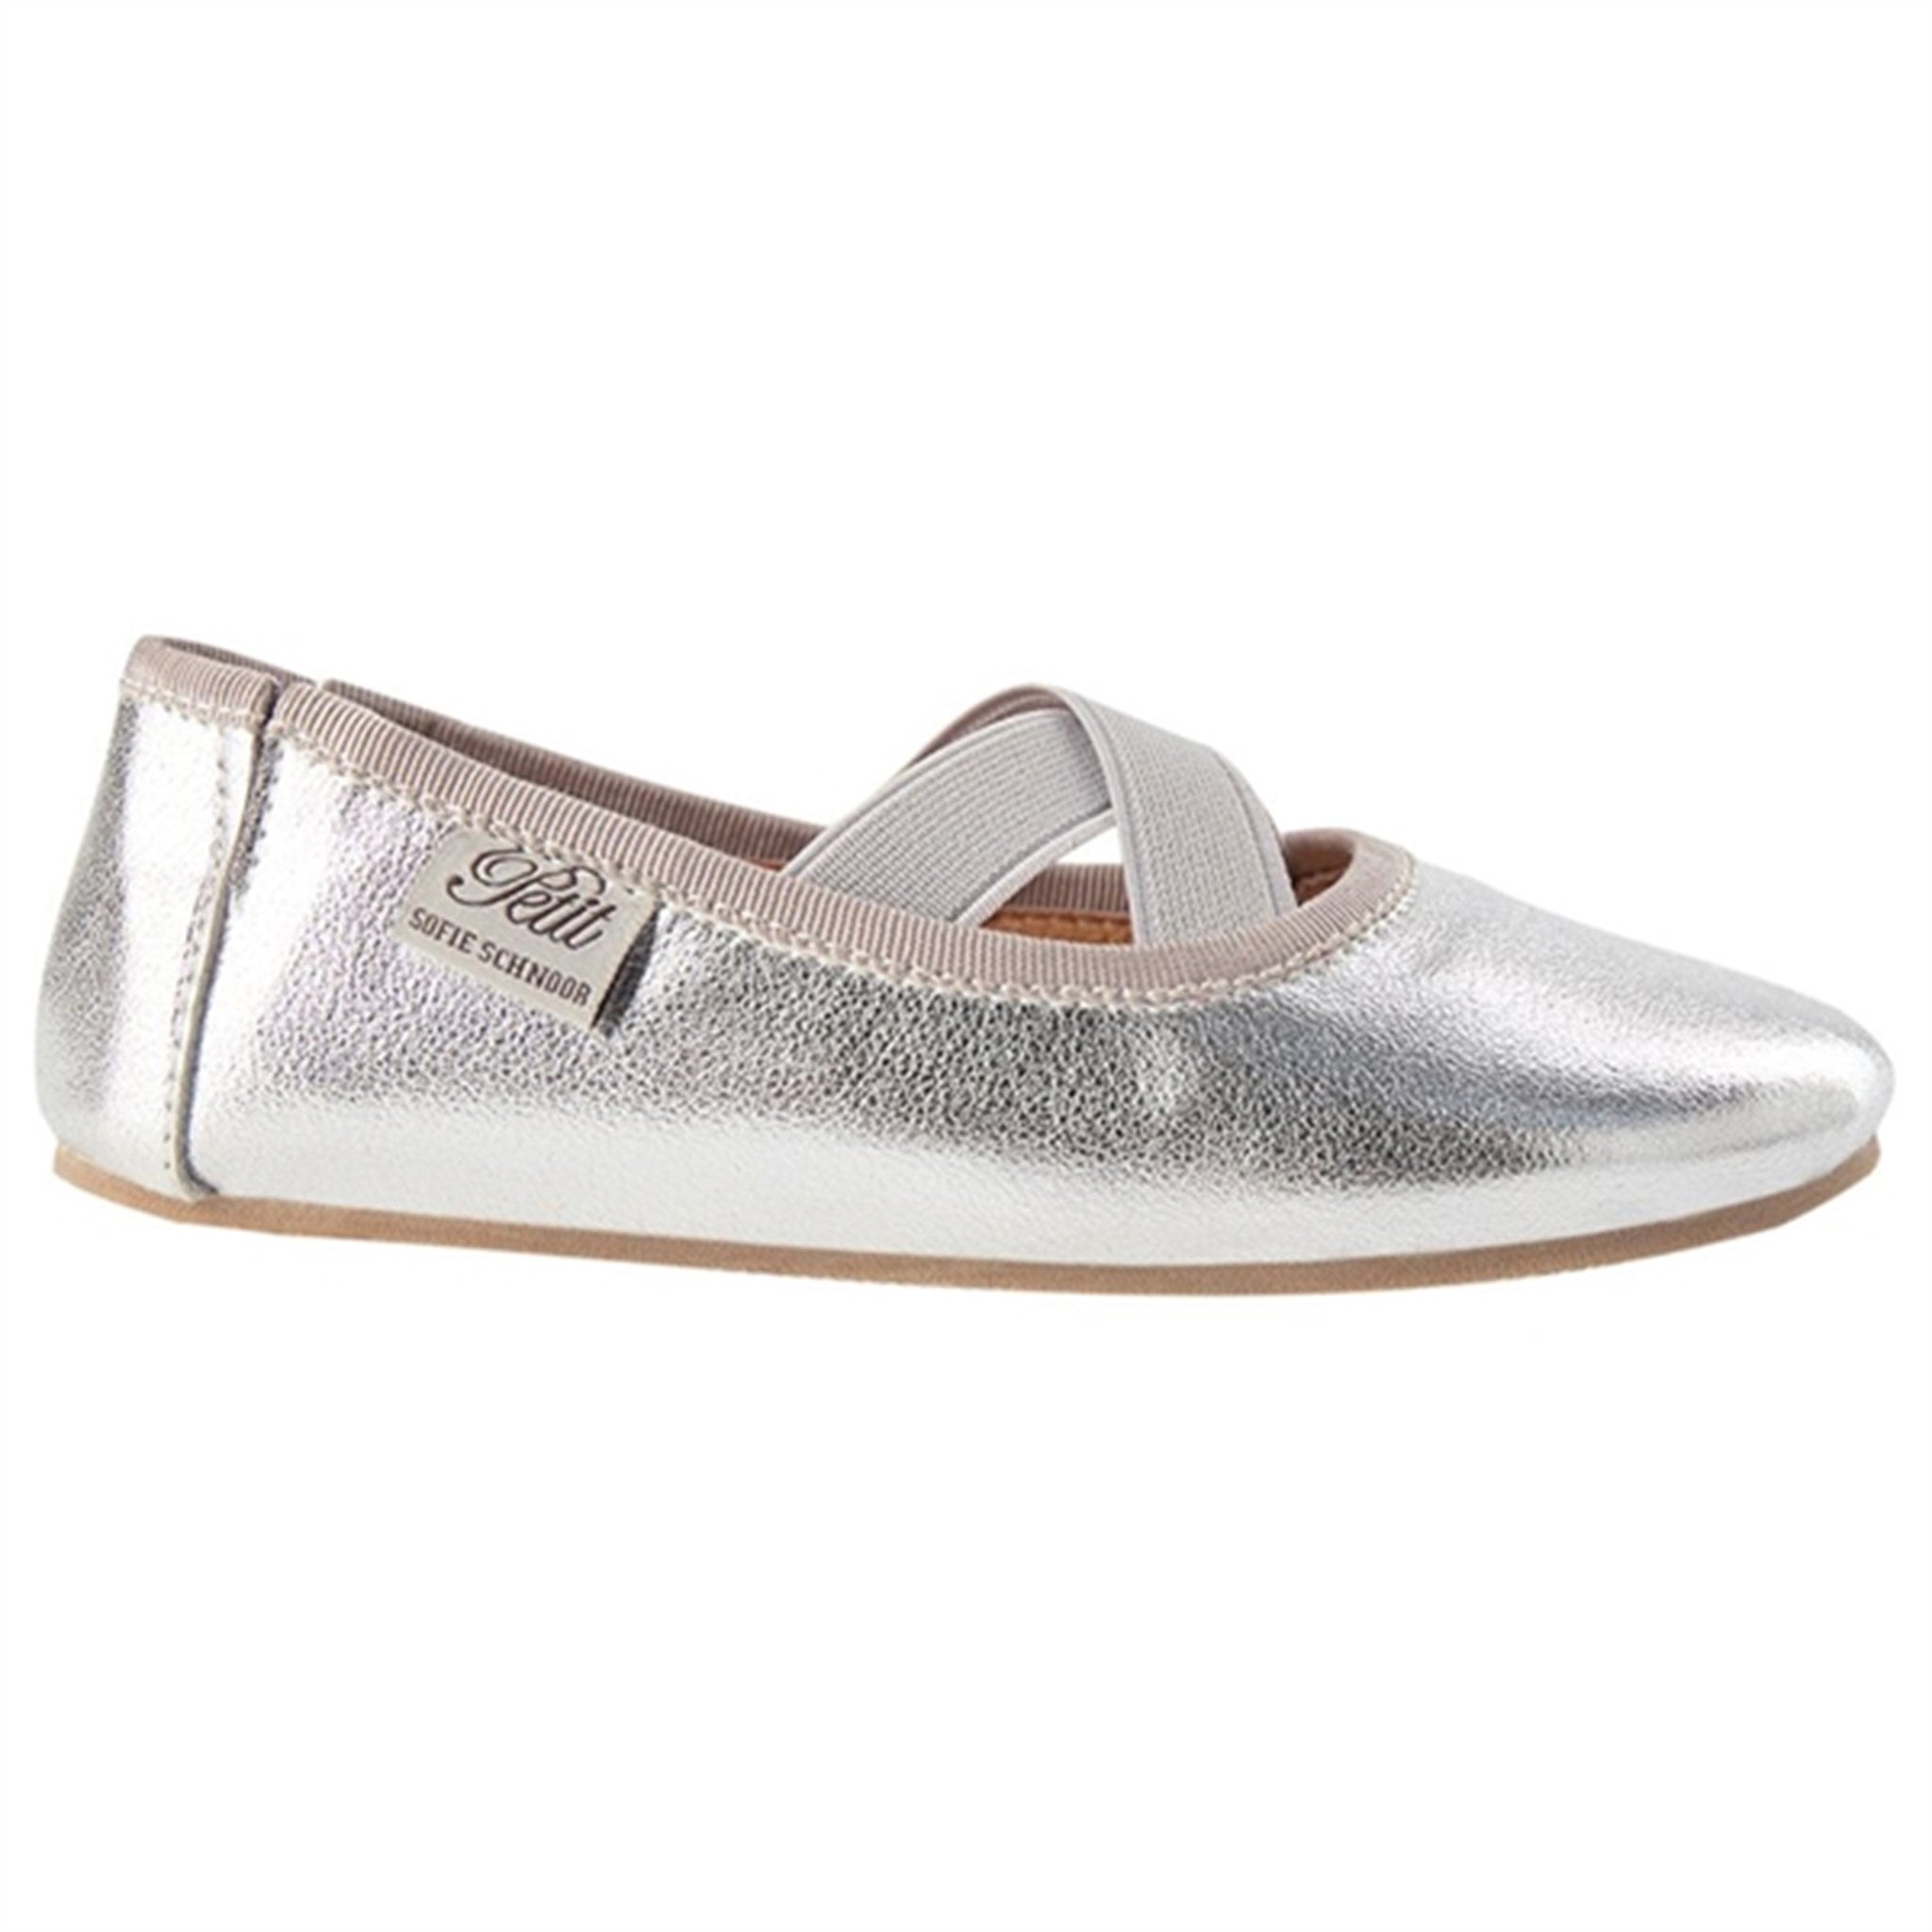 Sofie Schnoor Indoor Shoes Silver 2